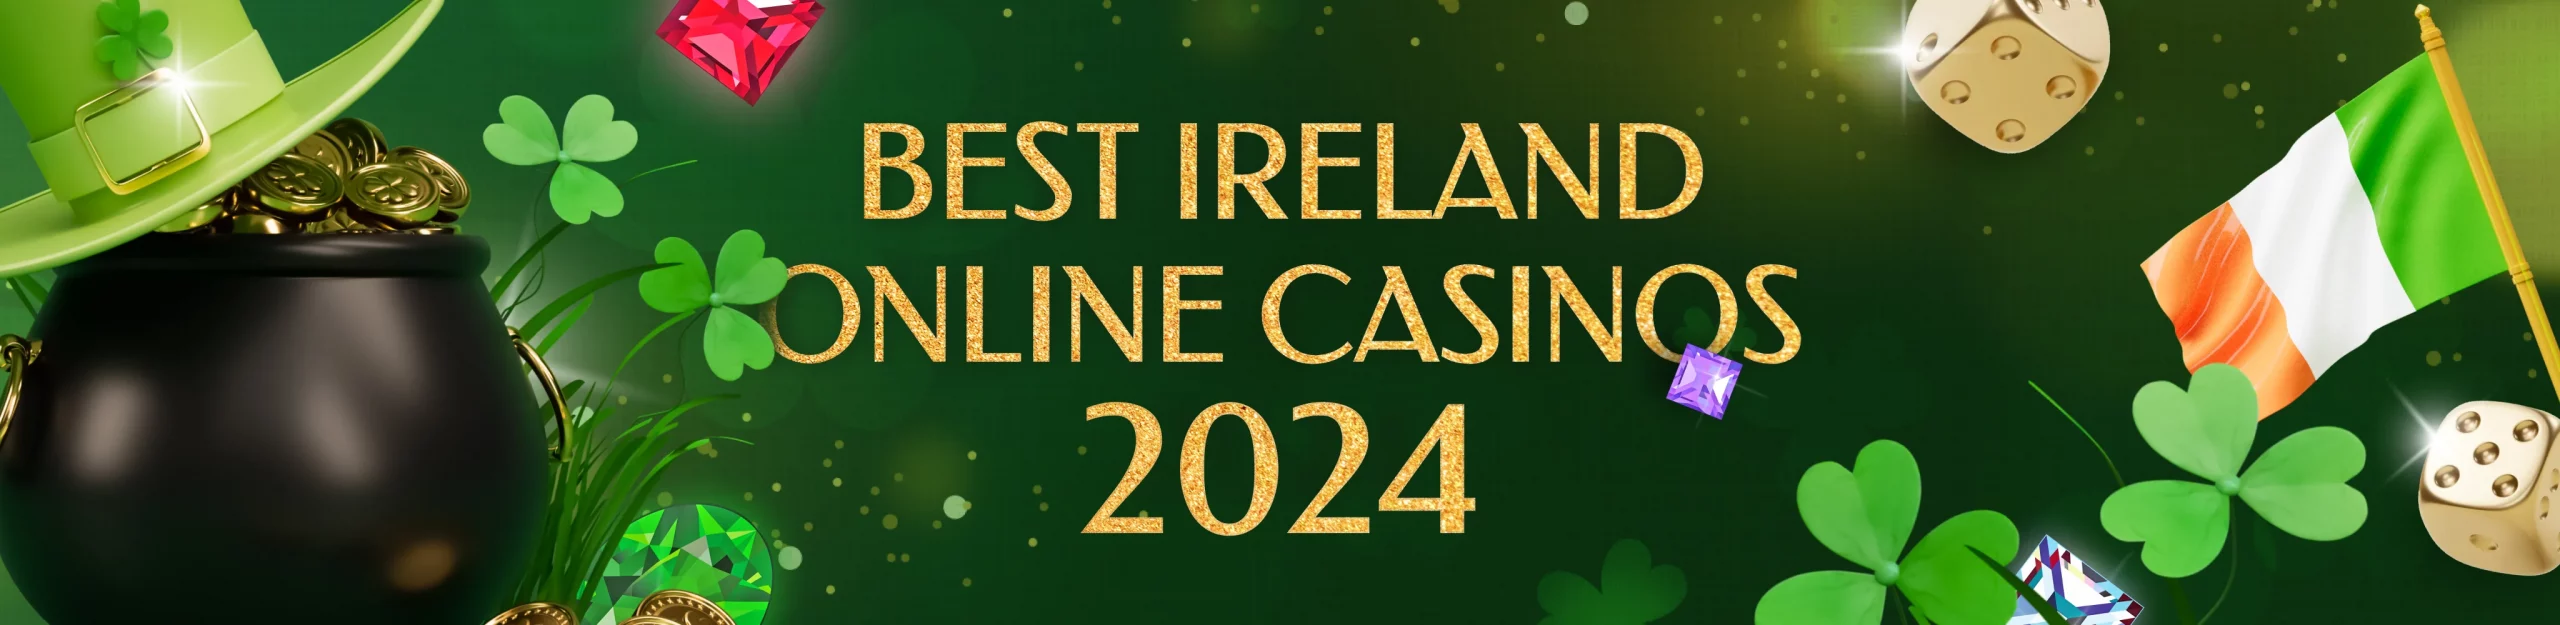 best online casinos in ireland main page banner